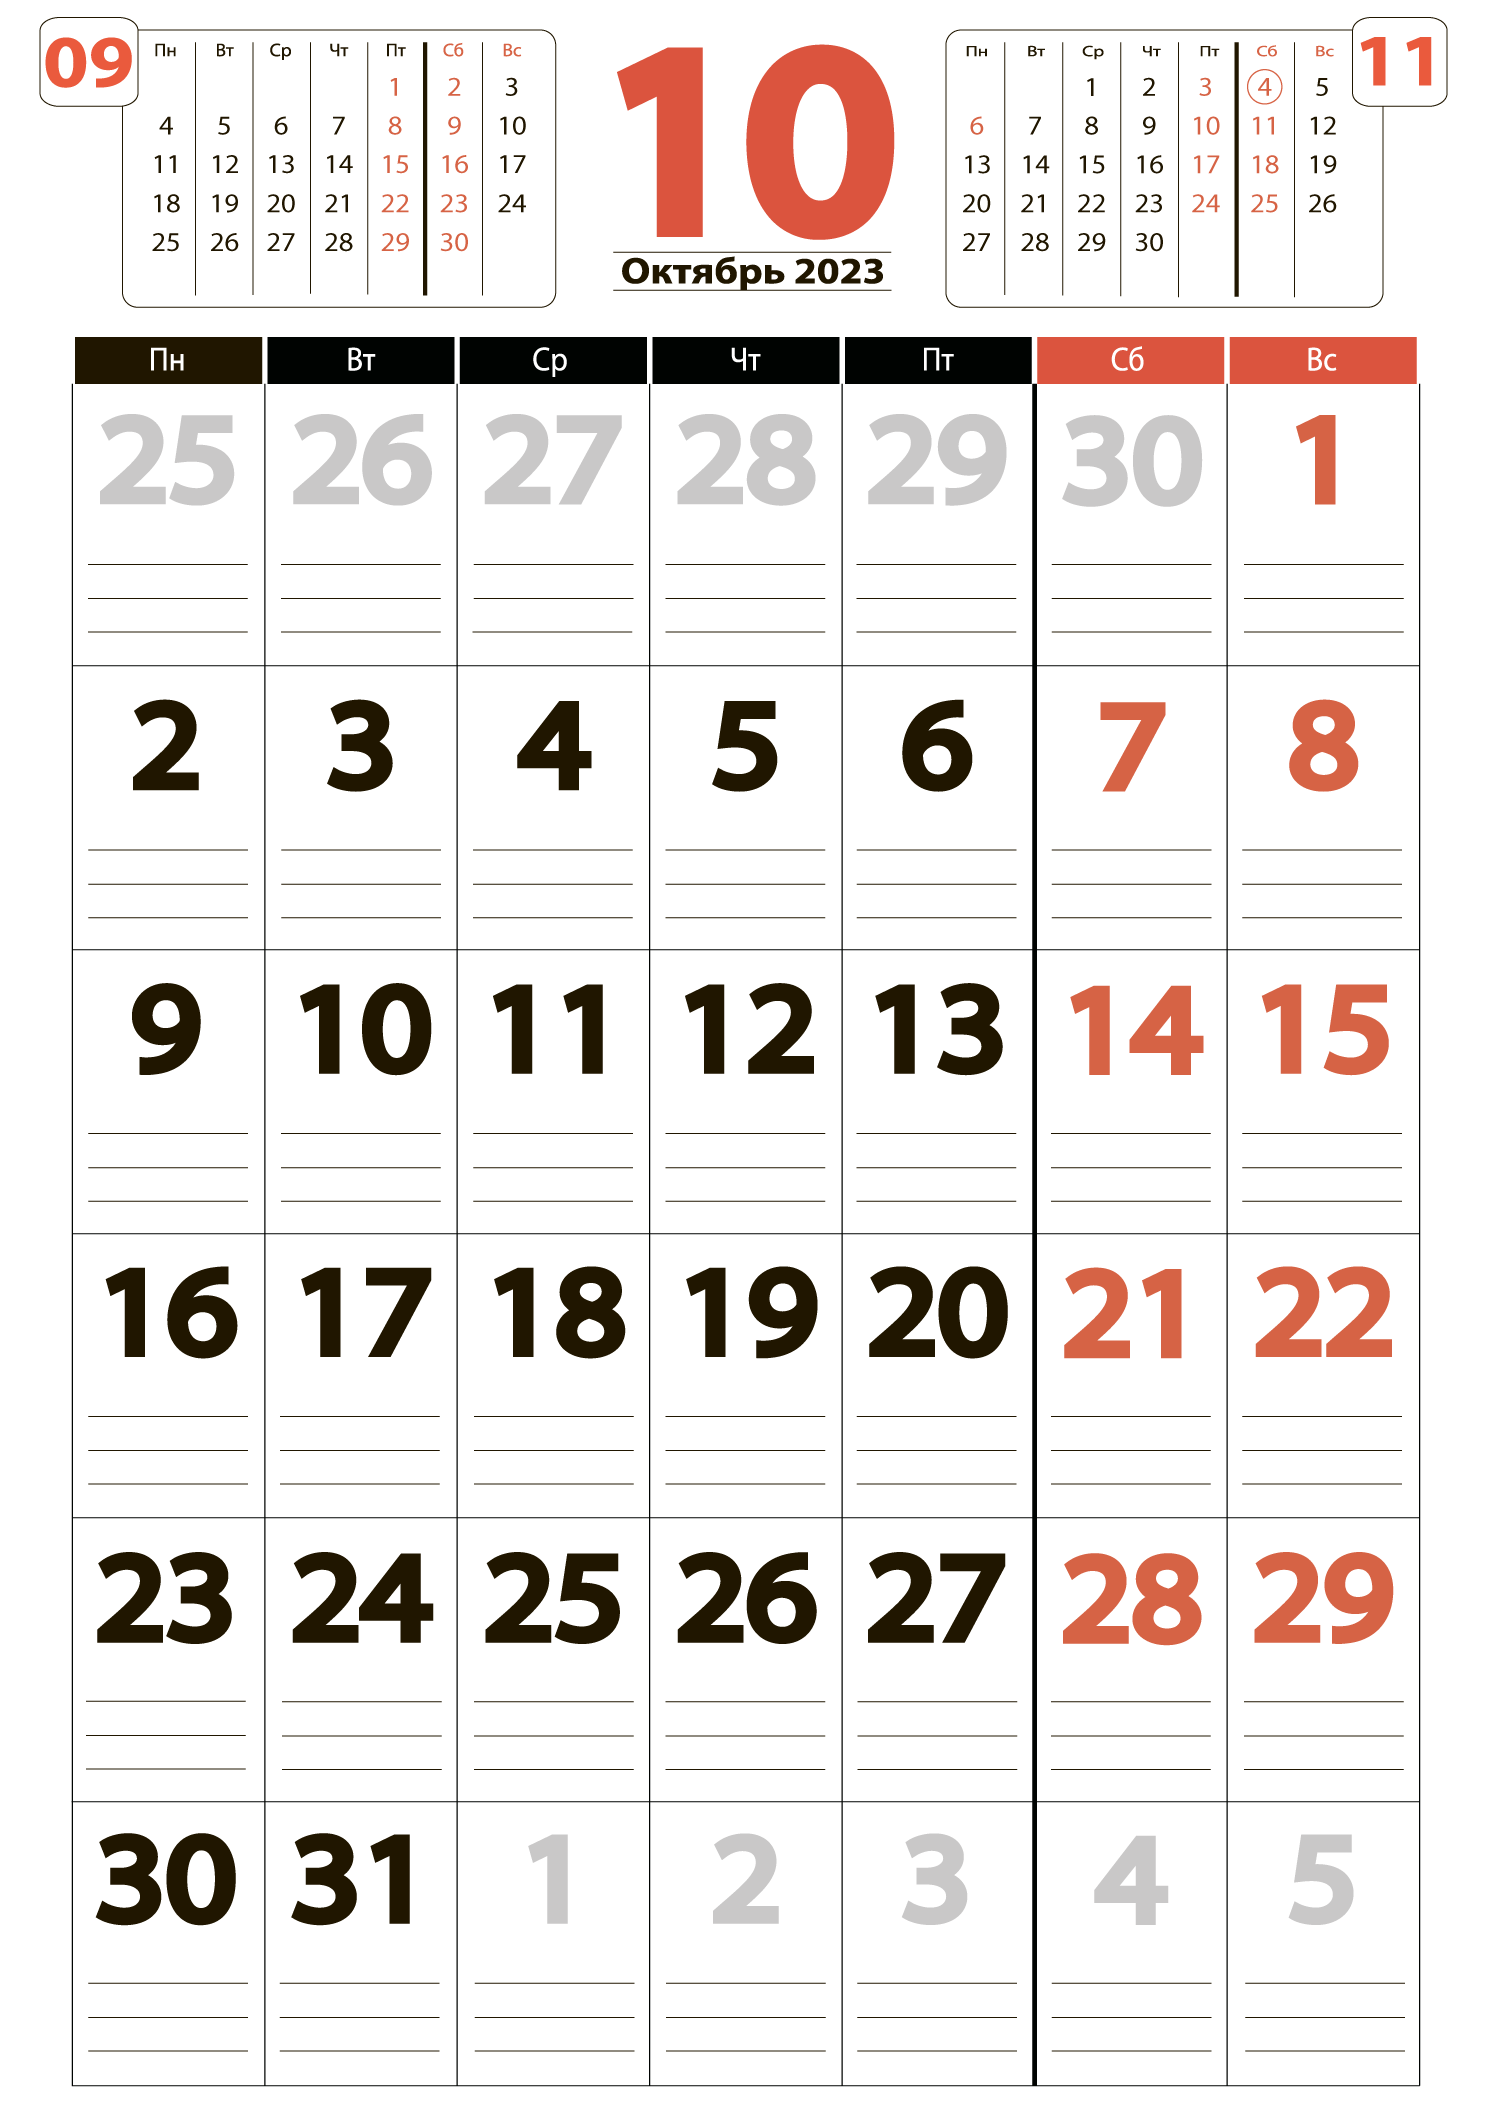 Календарь на октябрь 2023 - скачать